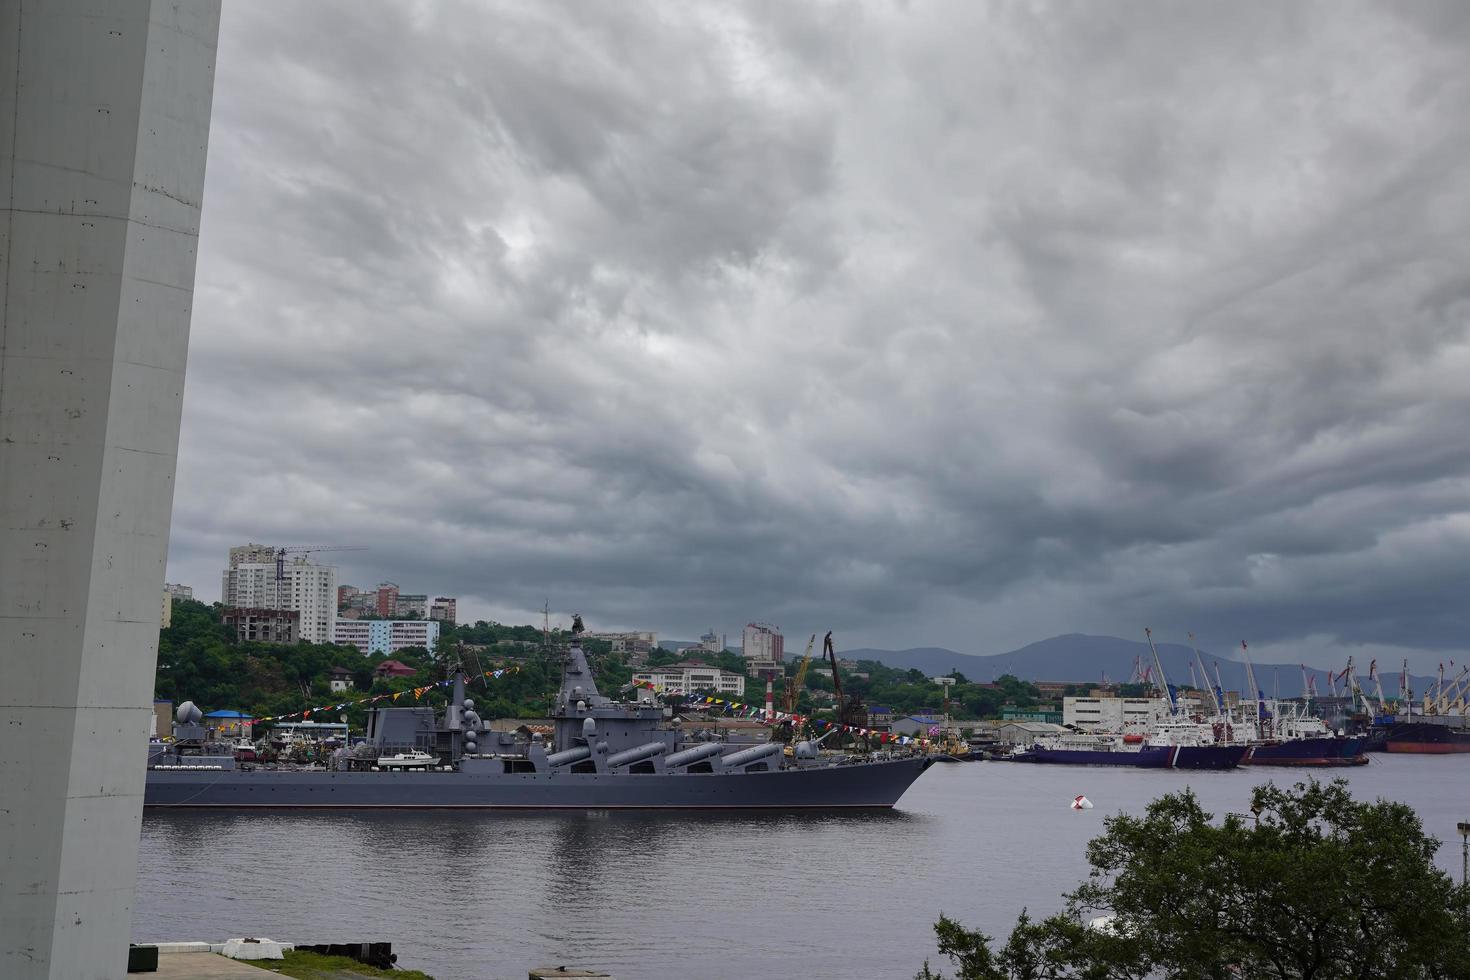 paisaje de la ciudad con una vista de un buque de guerra. foto